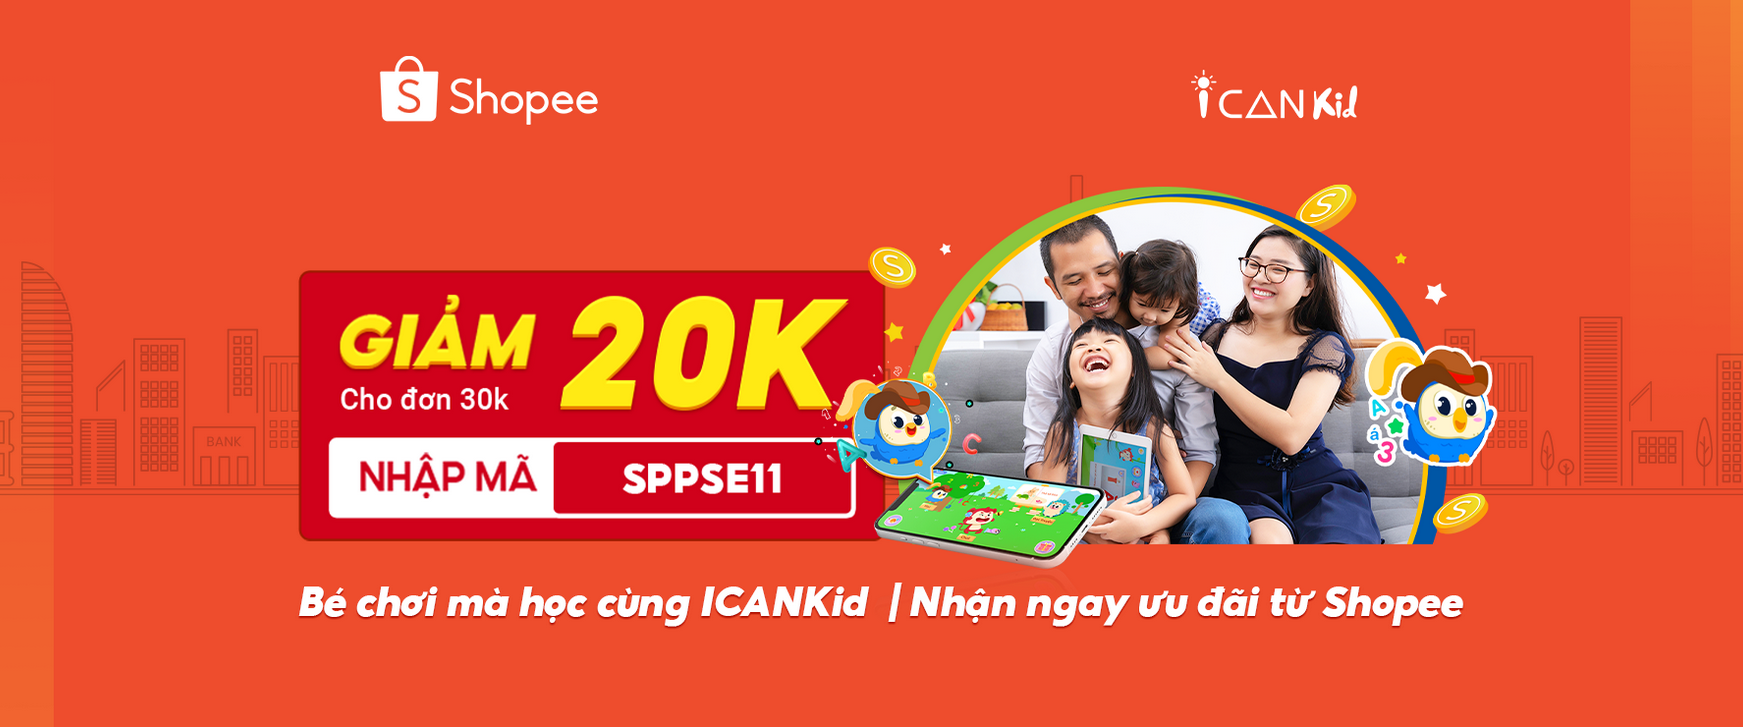 Ưu đãi giảm giá 20K cho các gói ICANKid trên Shopee